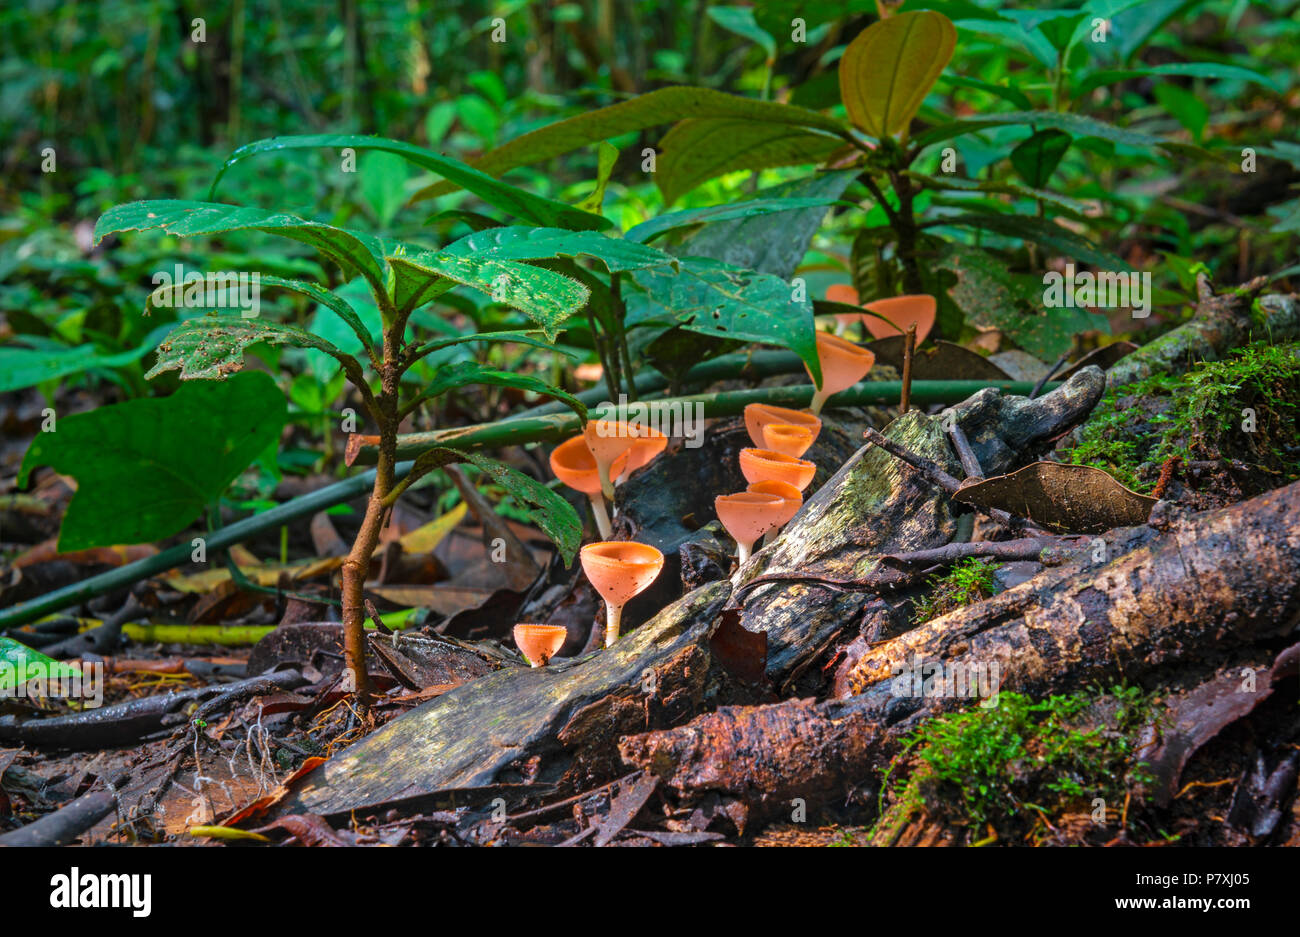 Lange Belichtung Foto des Amazonas Regenwaldes Boden mit roten Neotropischer cup Pilz (Cookeina sulcipes) innerhalb der Yasuni Nationalpark, Ecuador. Stockfoto